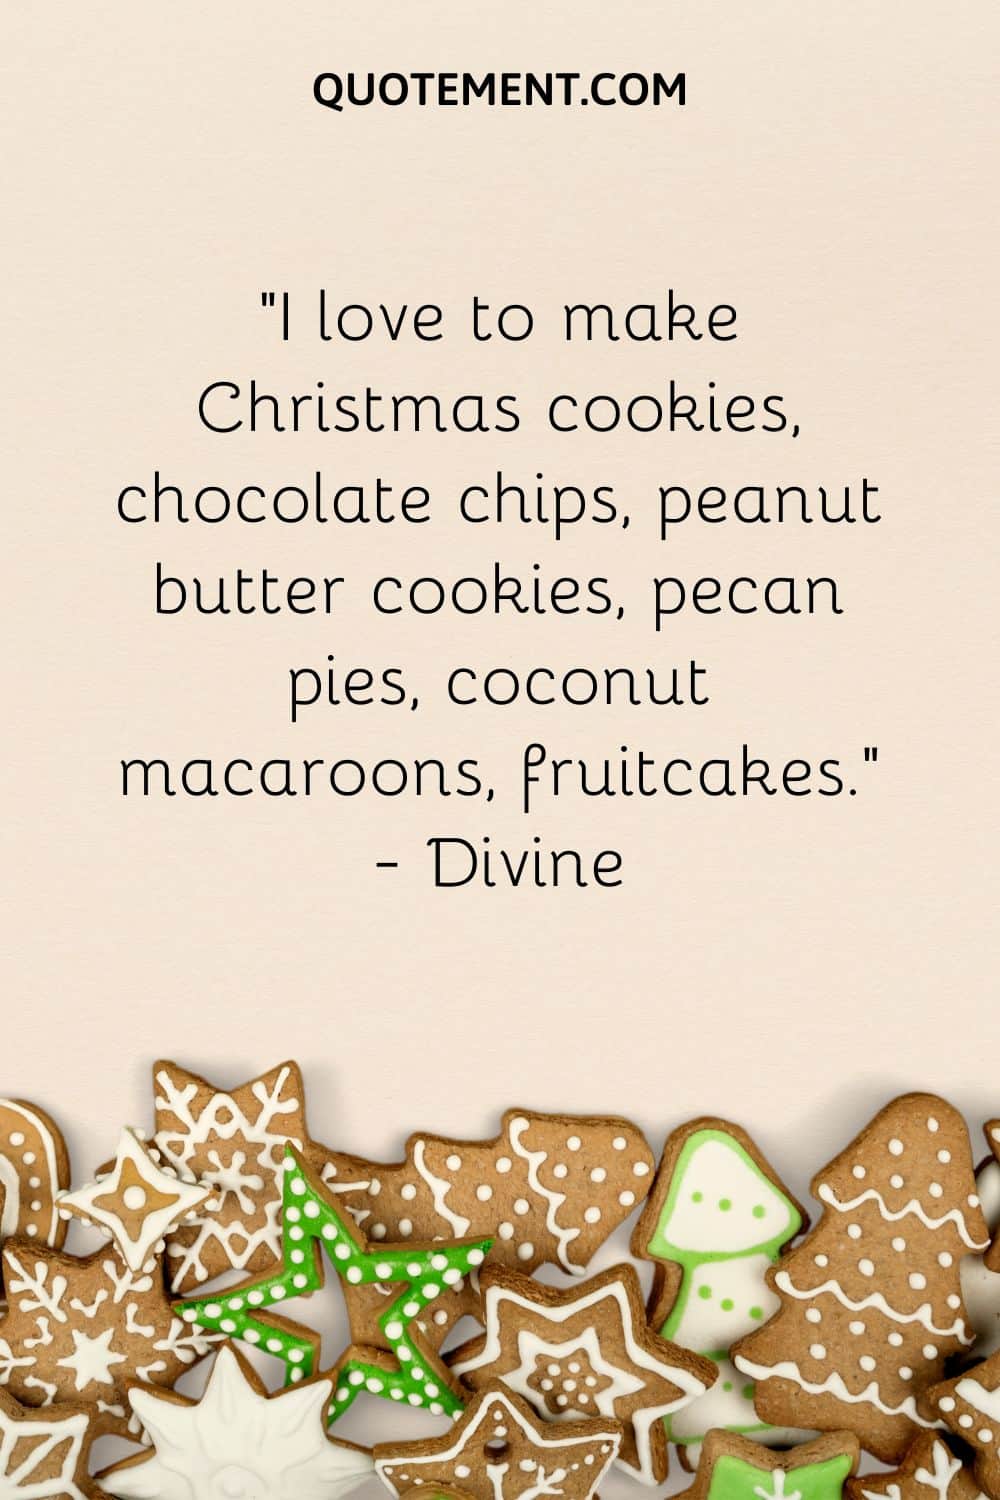 I love to make Christmas cookies